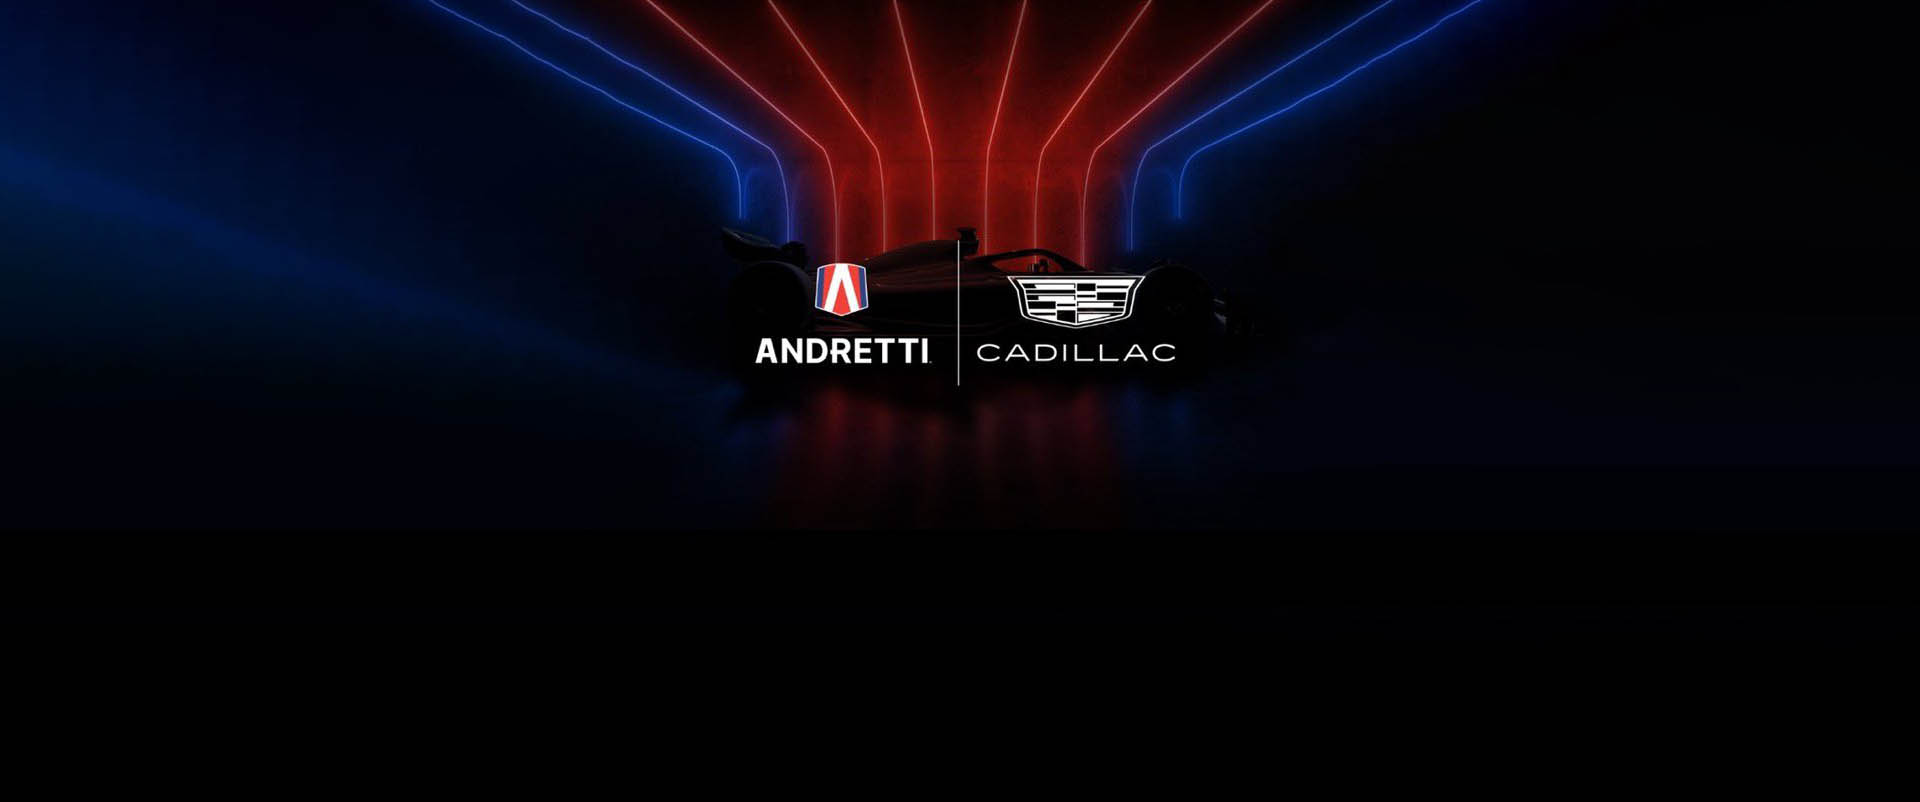 F1 - Andretti Cadillac